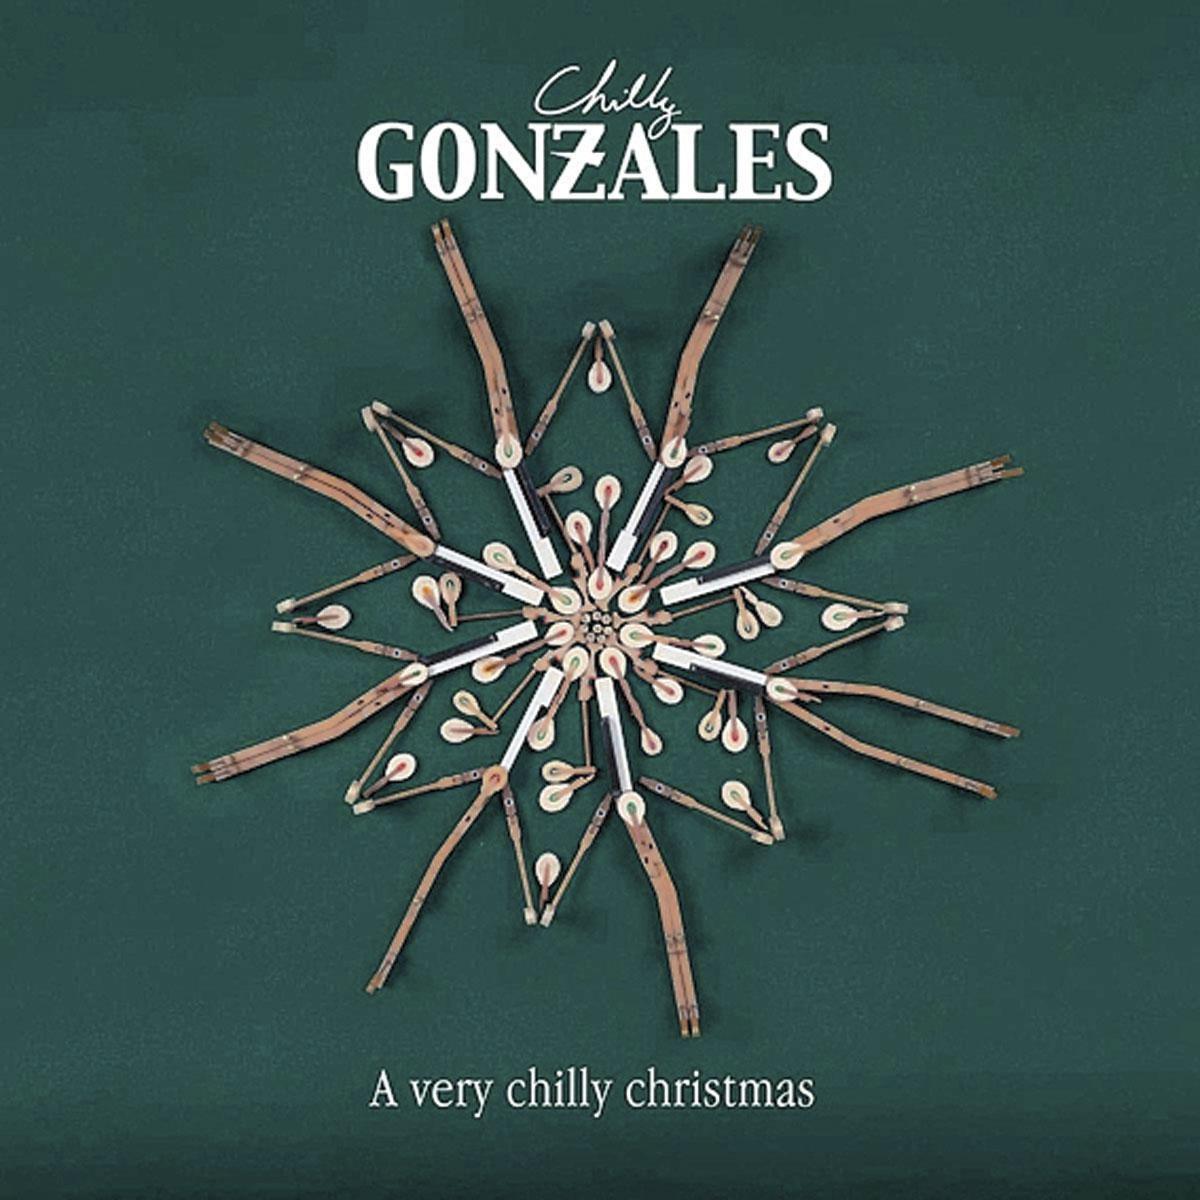 Chilly Gonzales sort un disque de Noël: 